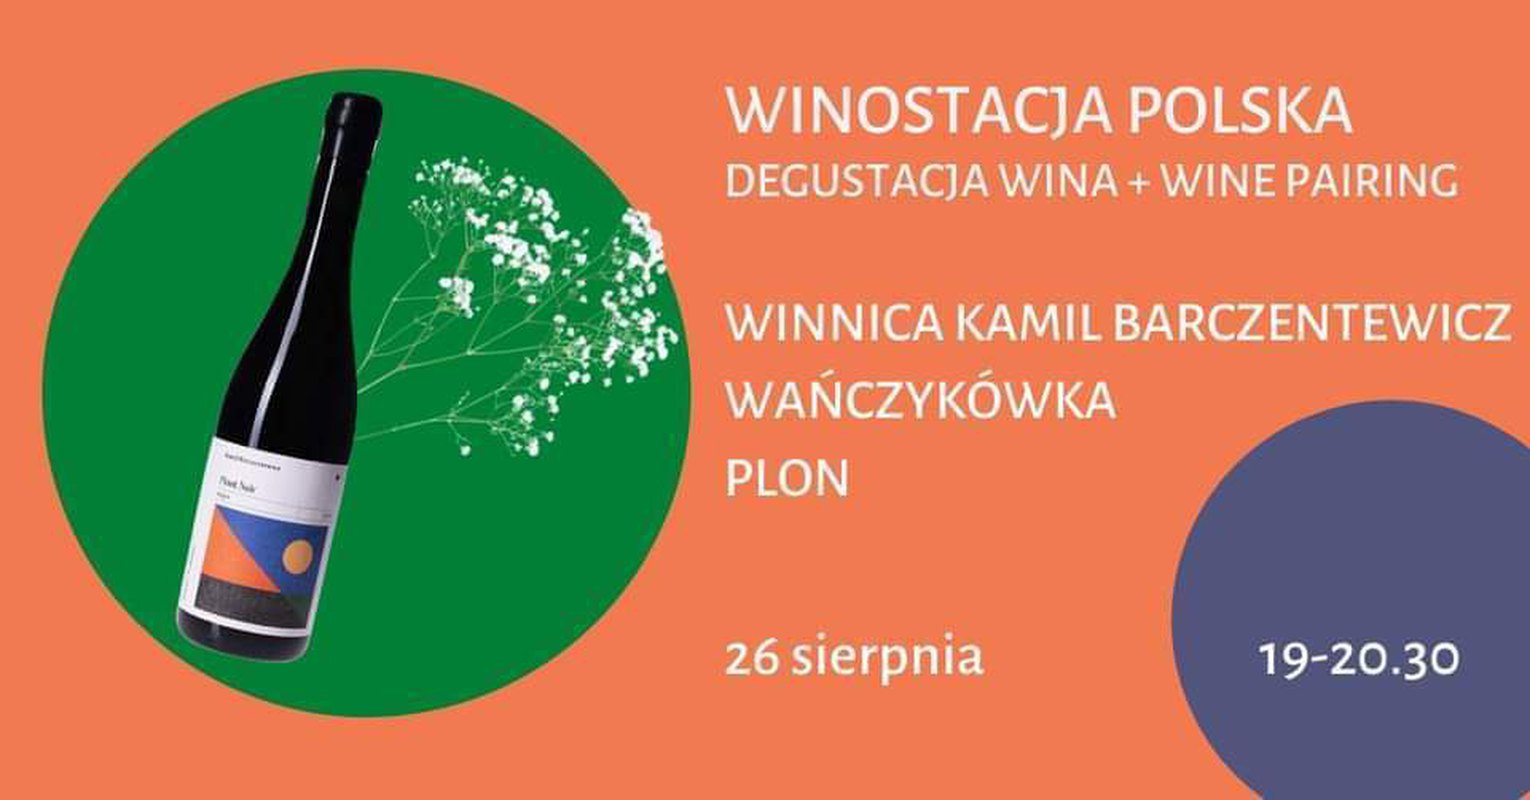 Degustacja i wine pairing. Winnica Kamil Barczentewicz